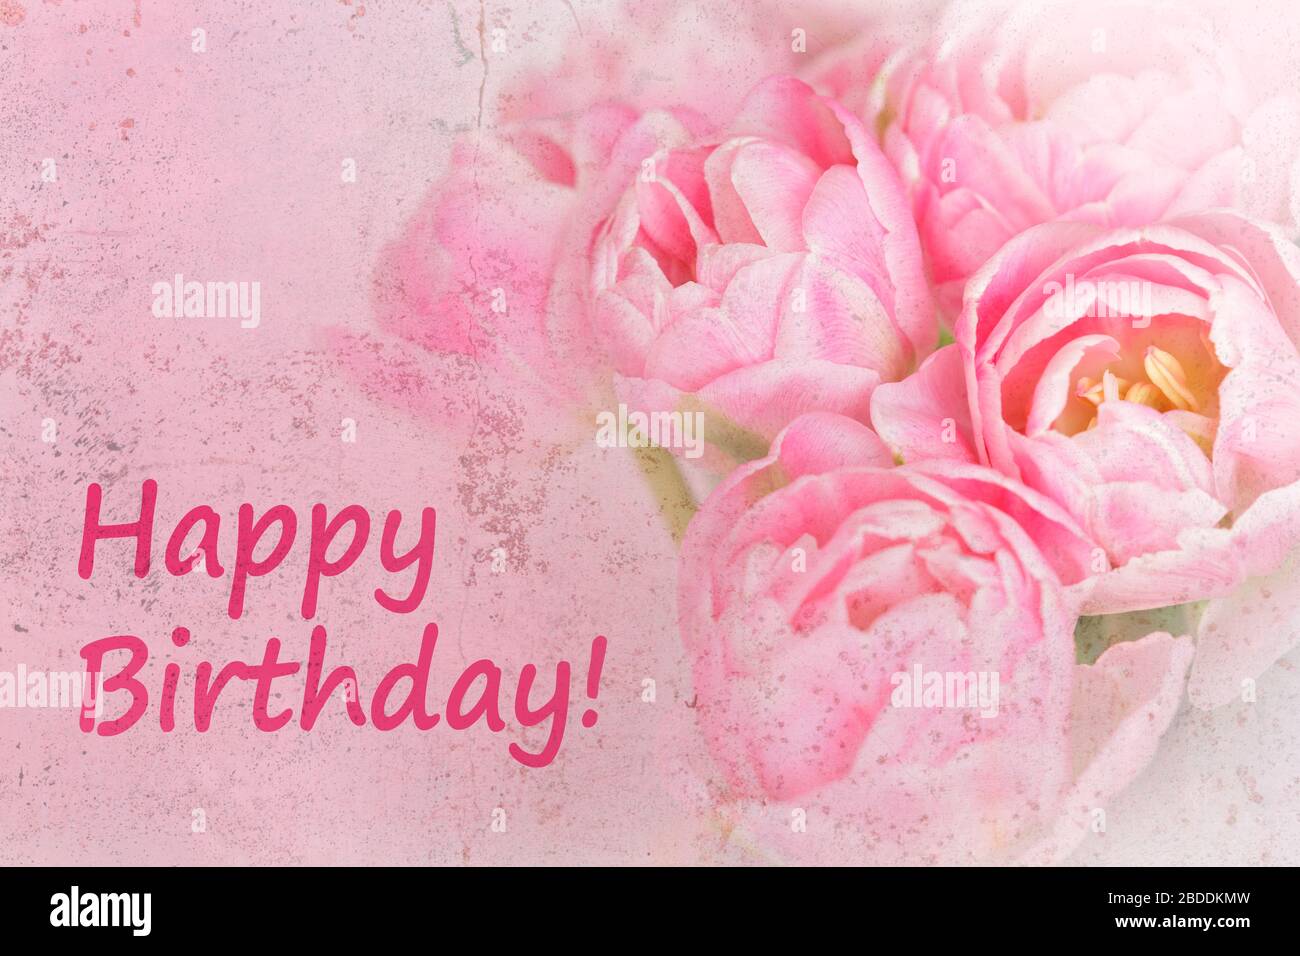 Vorlage für nostalgische Grußkarten. Rosa Blumen mit Text: Alles gute zum Geburtstag, verängstigter Grunge-Effekt. Stockfoto